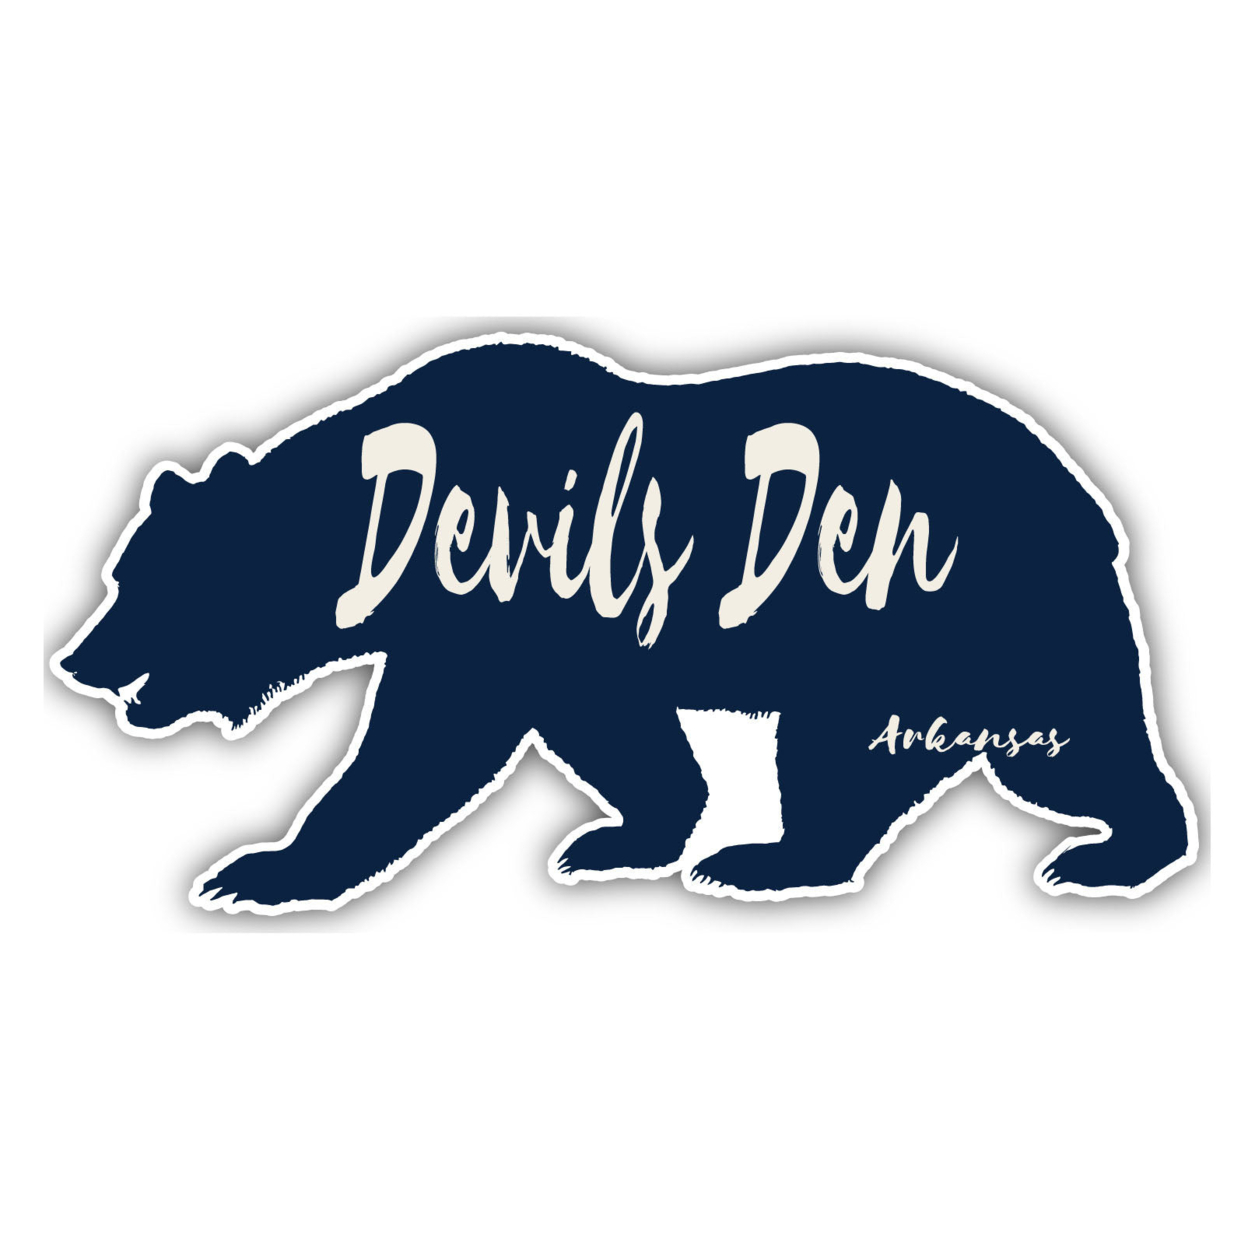 Devils Den Arkansas Souvenir Decorative Stickers (Choose Theme And Size) - Single Unit, 2-Inch, Bear